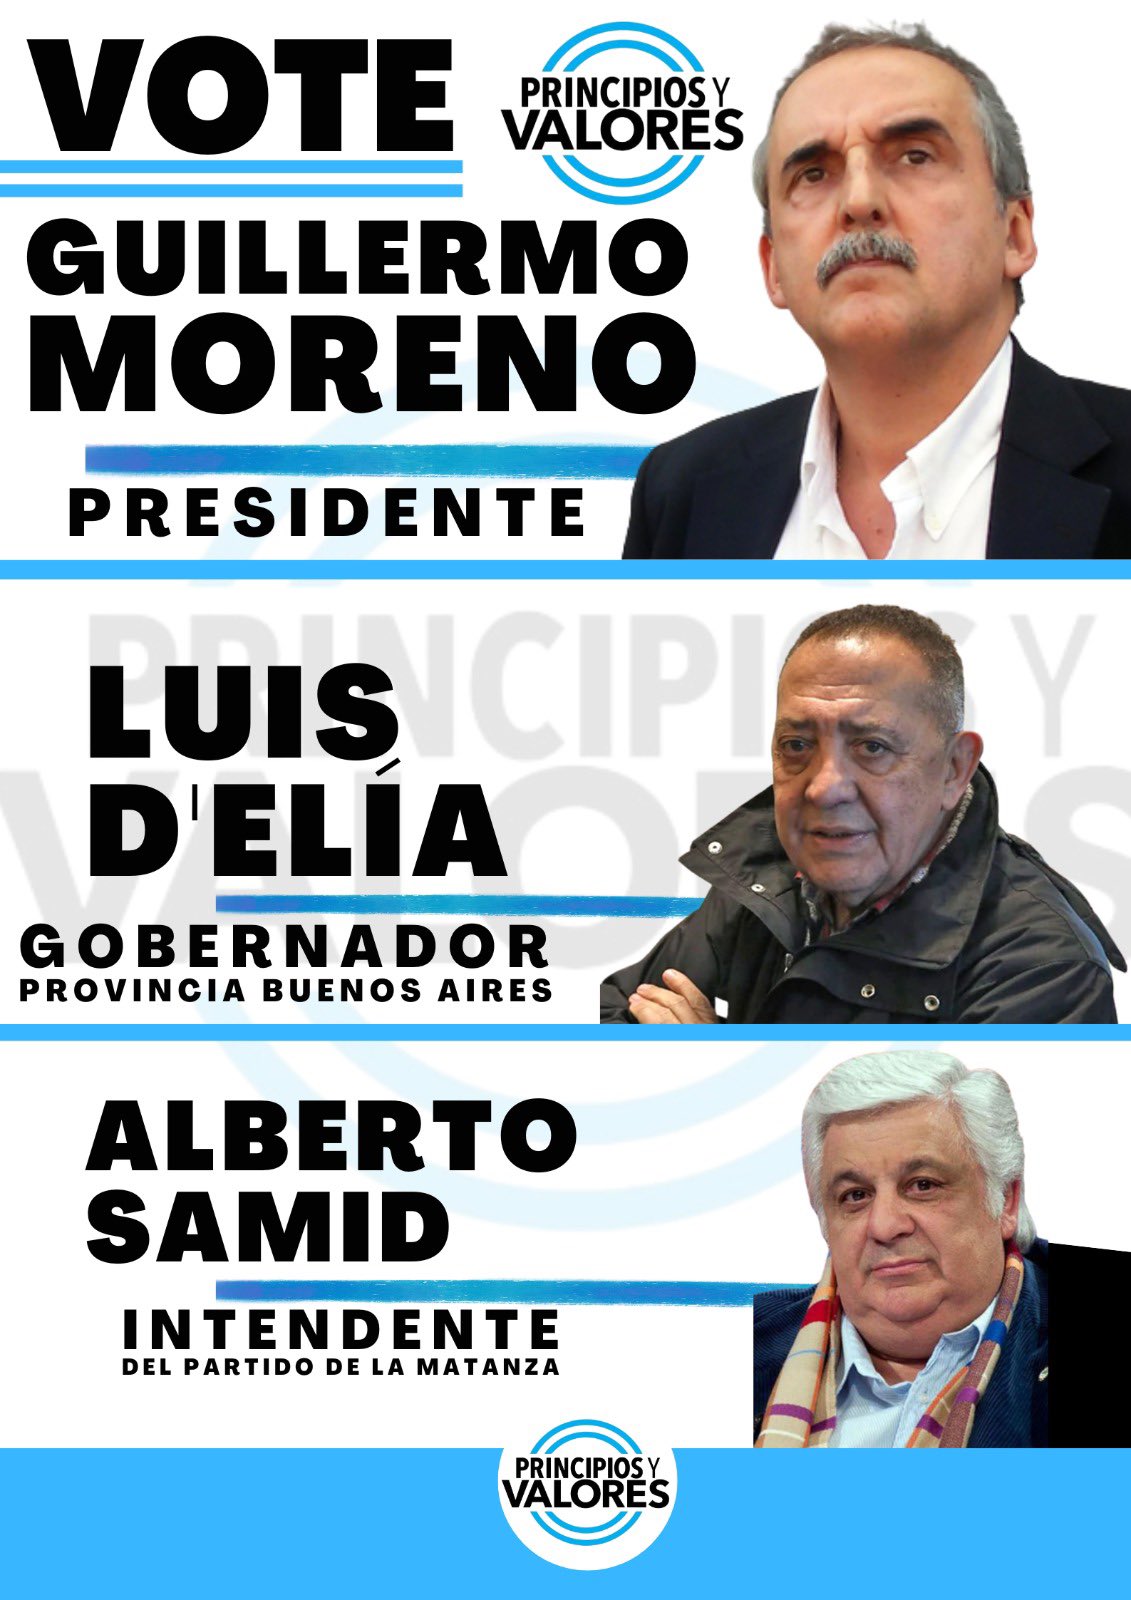 Principios y valores. Los tres candidatos principales: Moreno, D'Elía y Samid. Los tres lidiaron en los tribunales con causas judiciales y recibieron condenas. Algunas fueron cumplidas y otras están en trámite